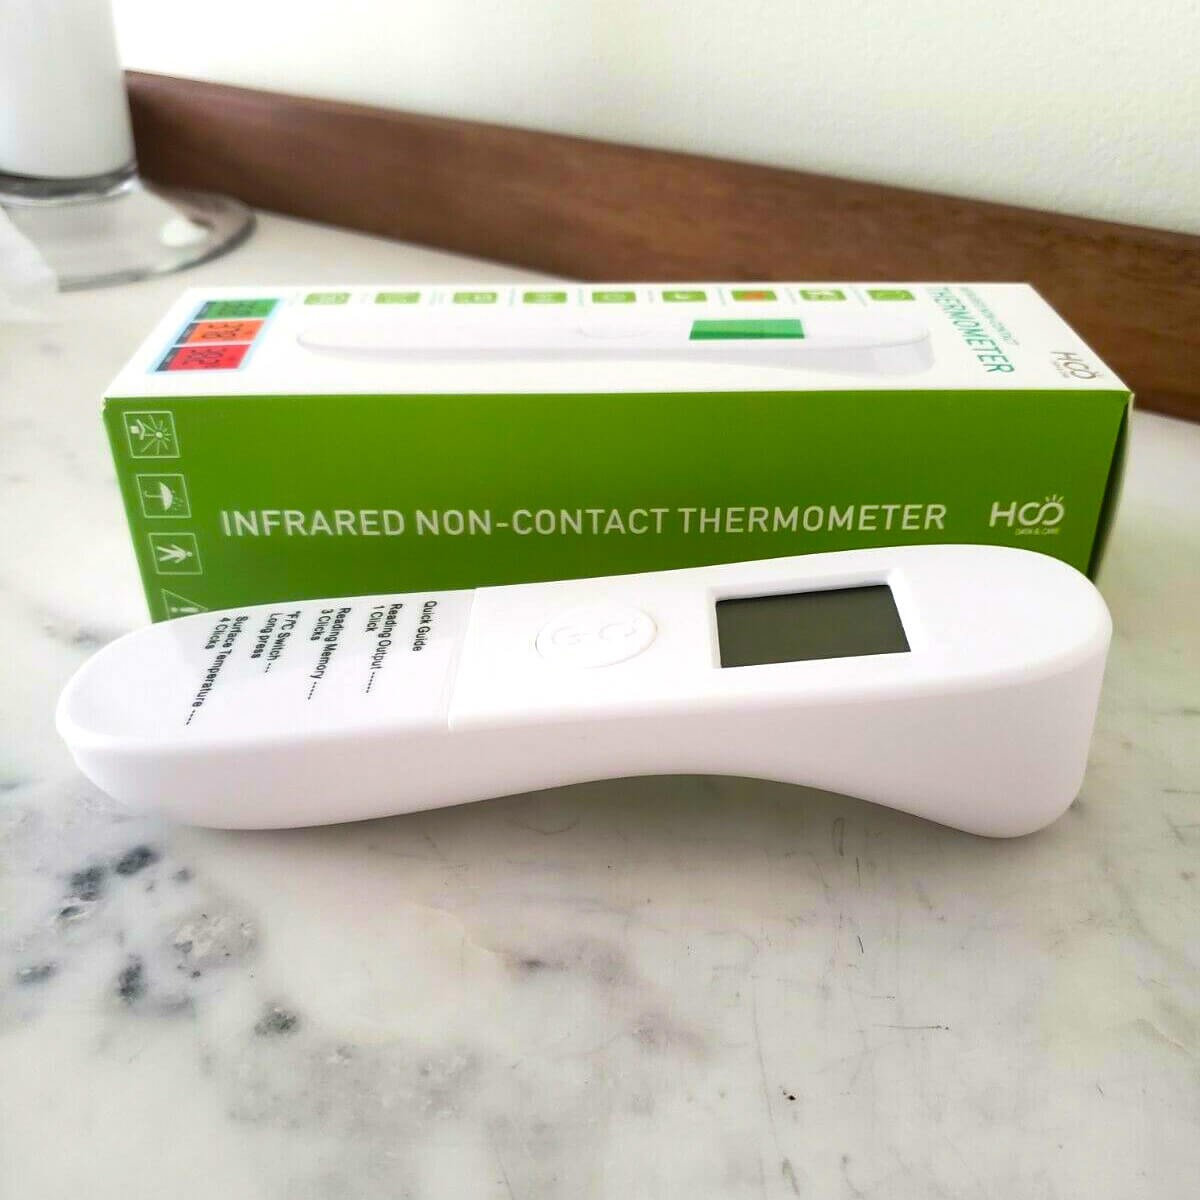 Termômetro e medidor de pressão com mercúrio não podem mais ser vendidos